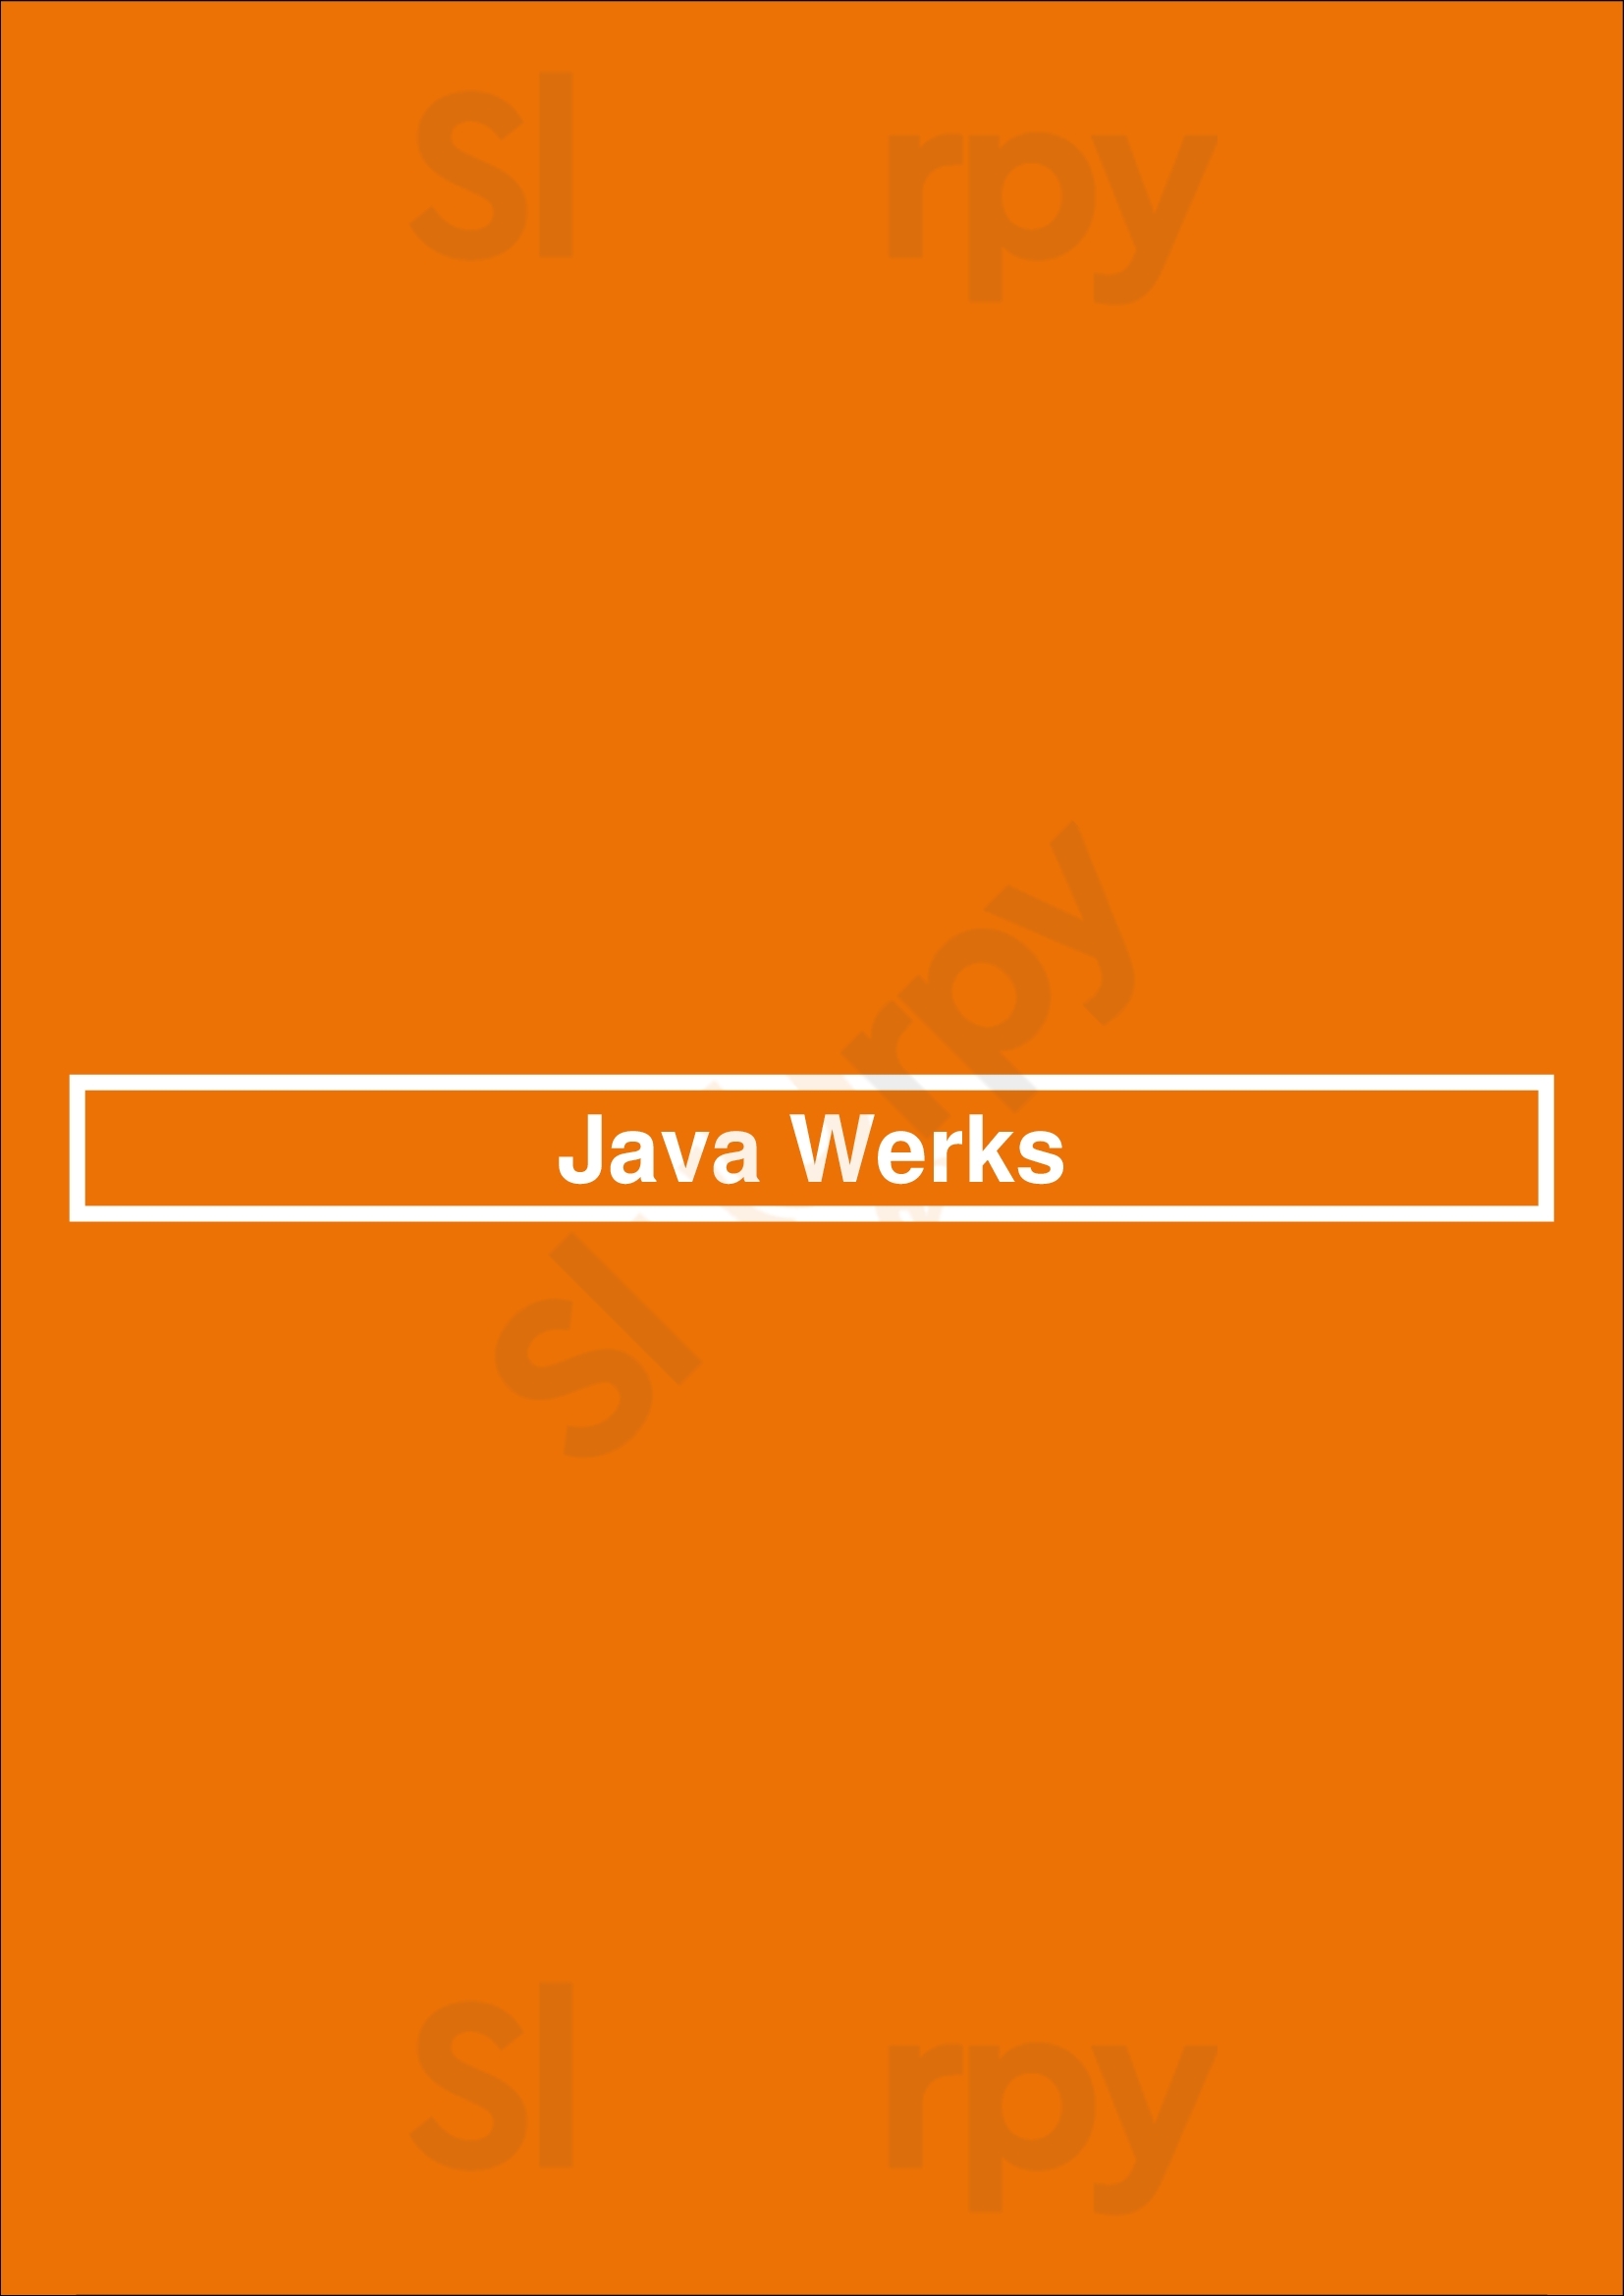 Java Werks Coffee And Tea Hattiesburg Menu - 1